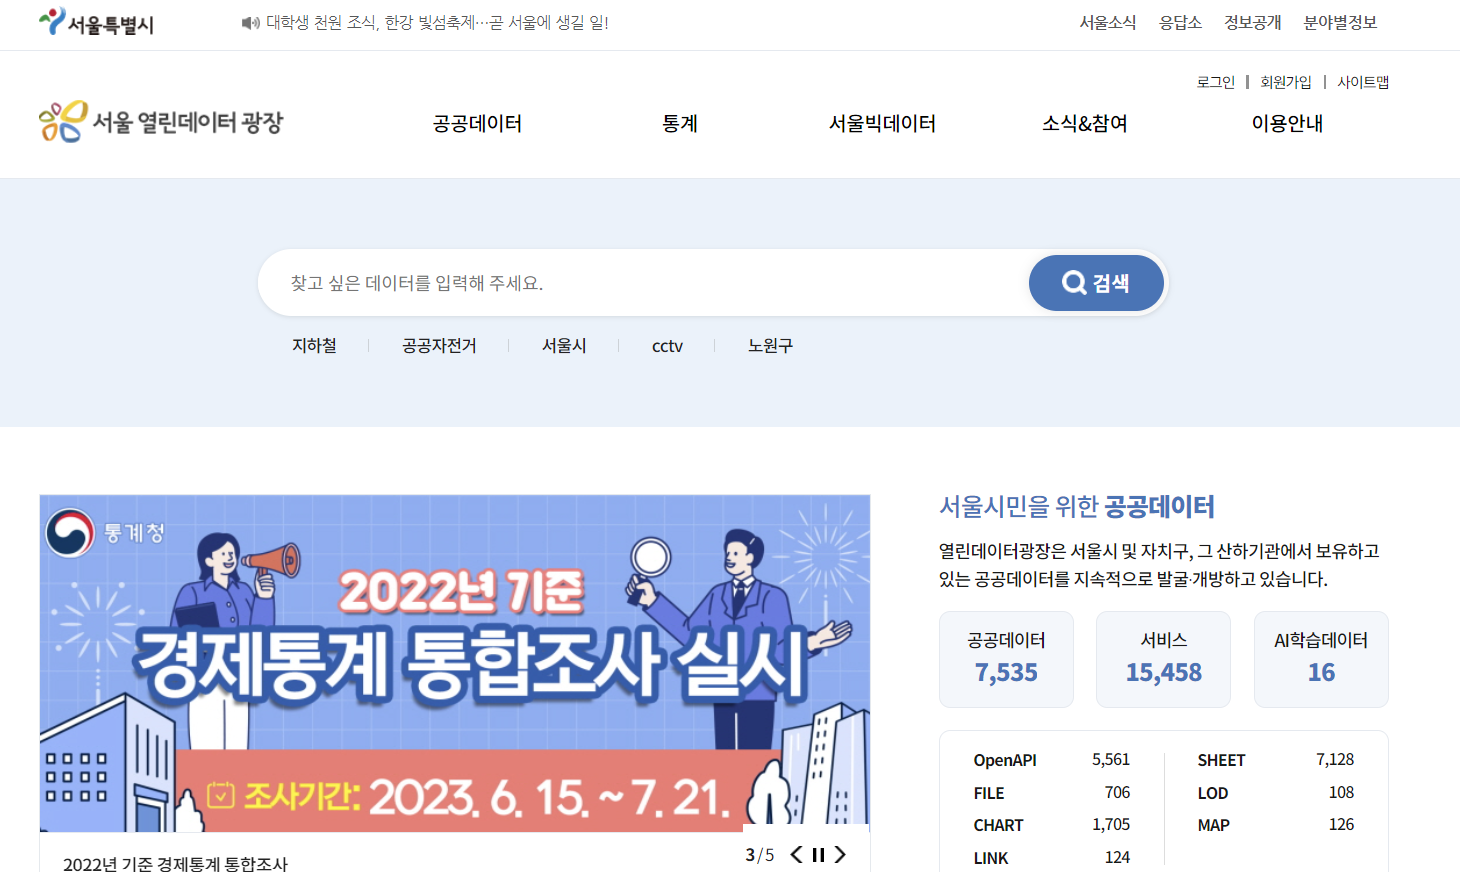 서울시 열린데이터 광장 홈페이지 메인 페이지